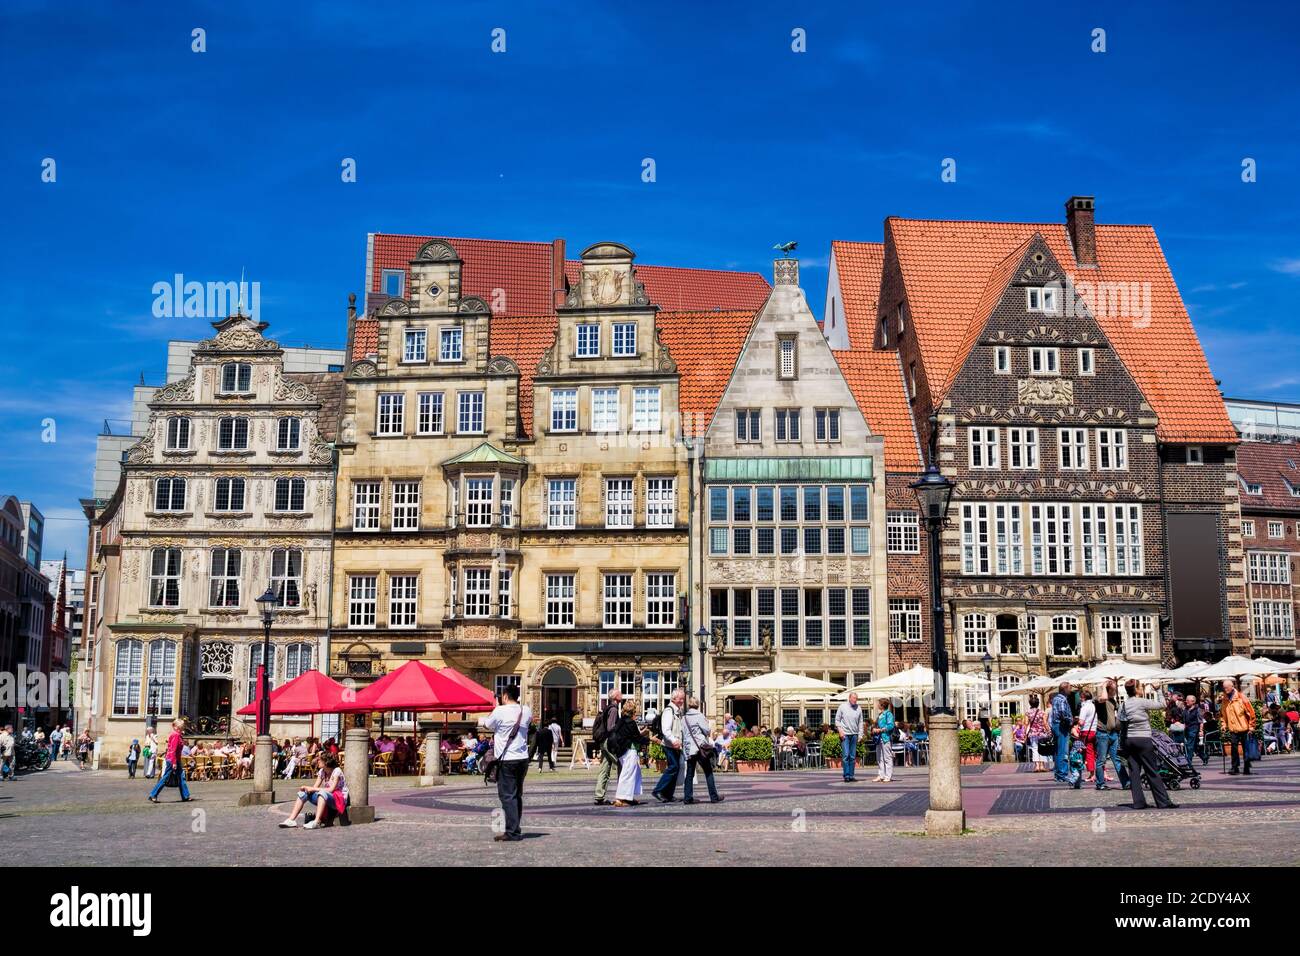 Historical market square in Bremen, Germany Stock Photo